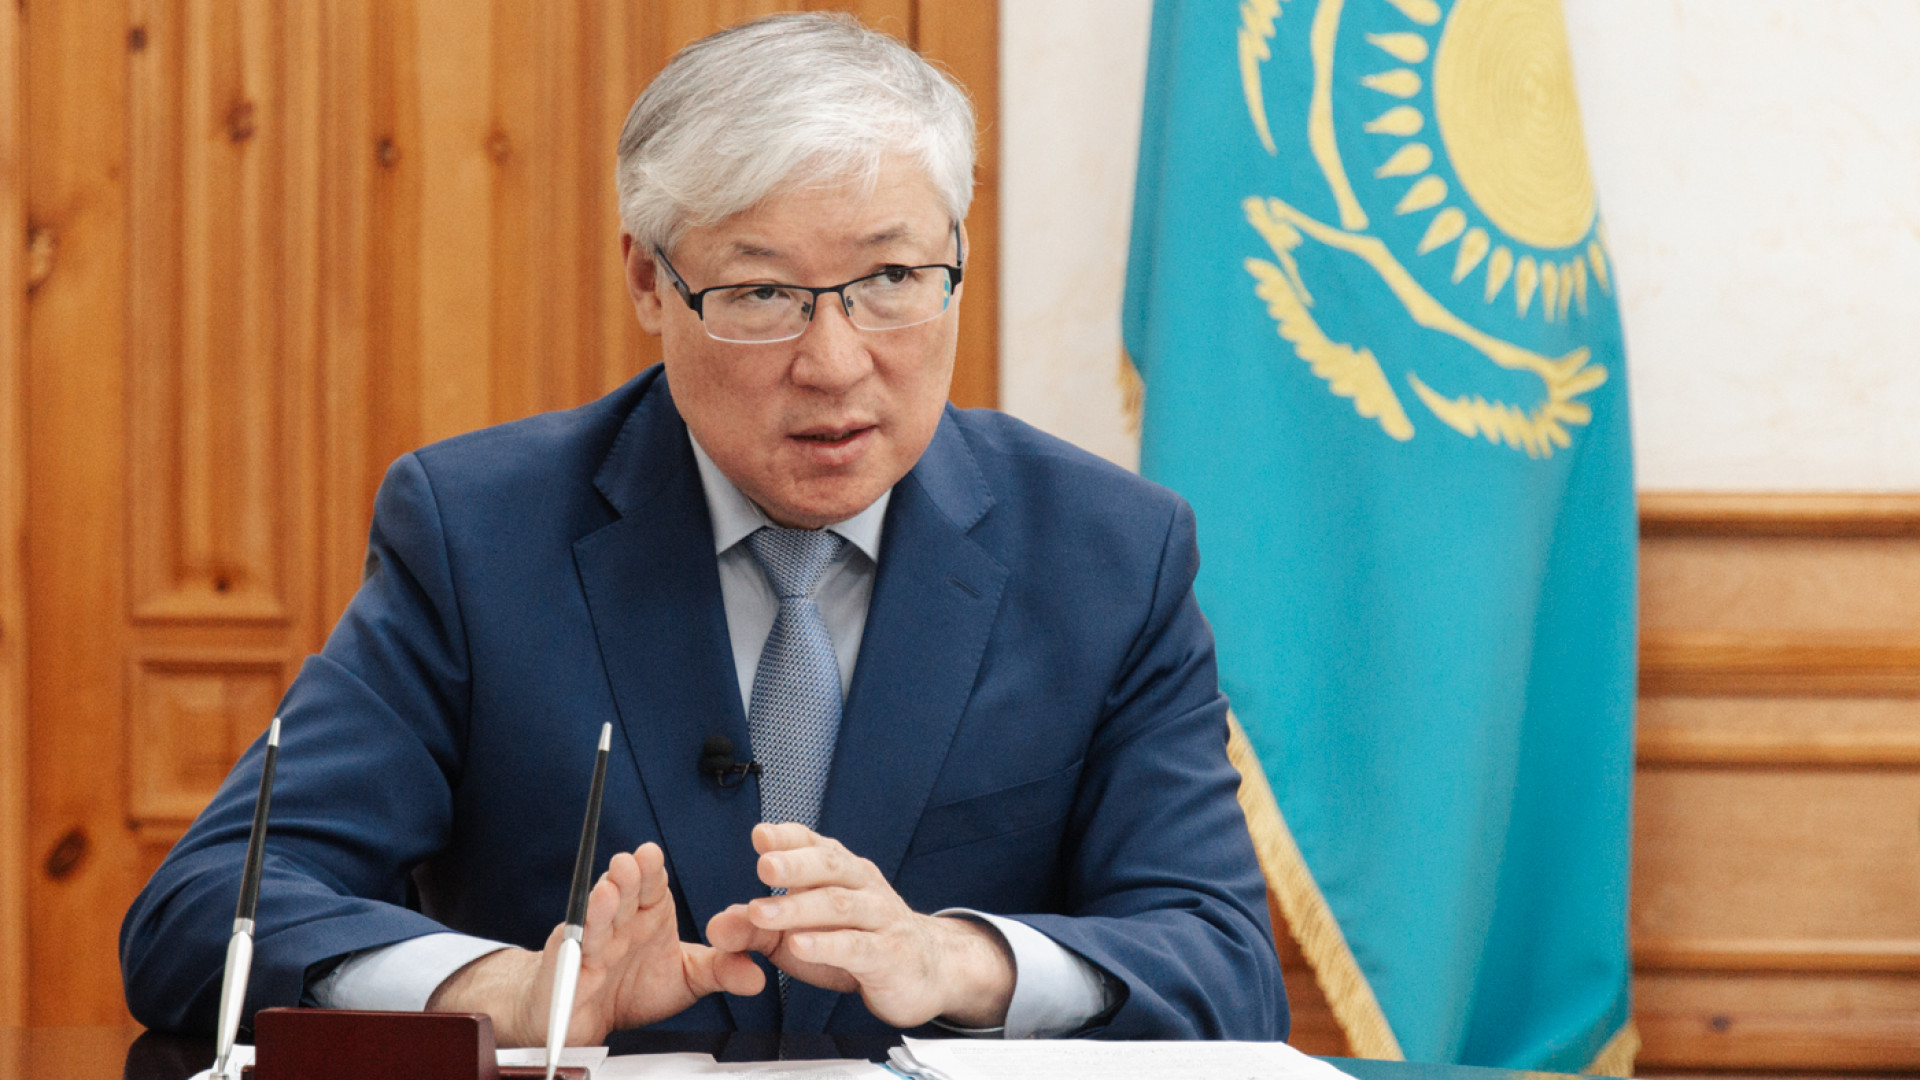 Аким Улытау предложил переименовать СКО в Кызылжар, Павлодар в Баянаул, ВКО в Алтай, ЗКО в акжайык